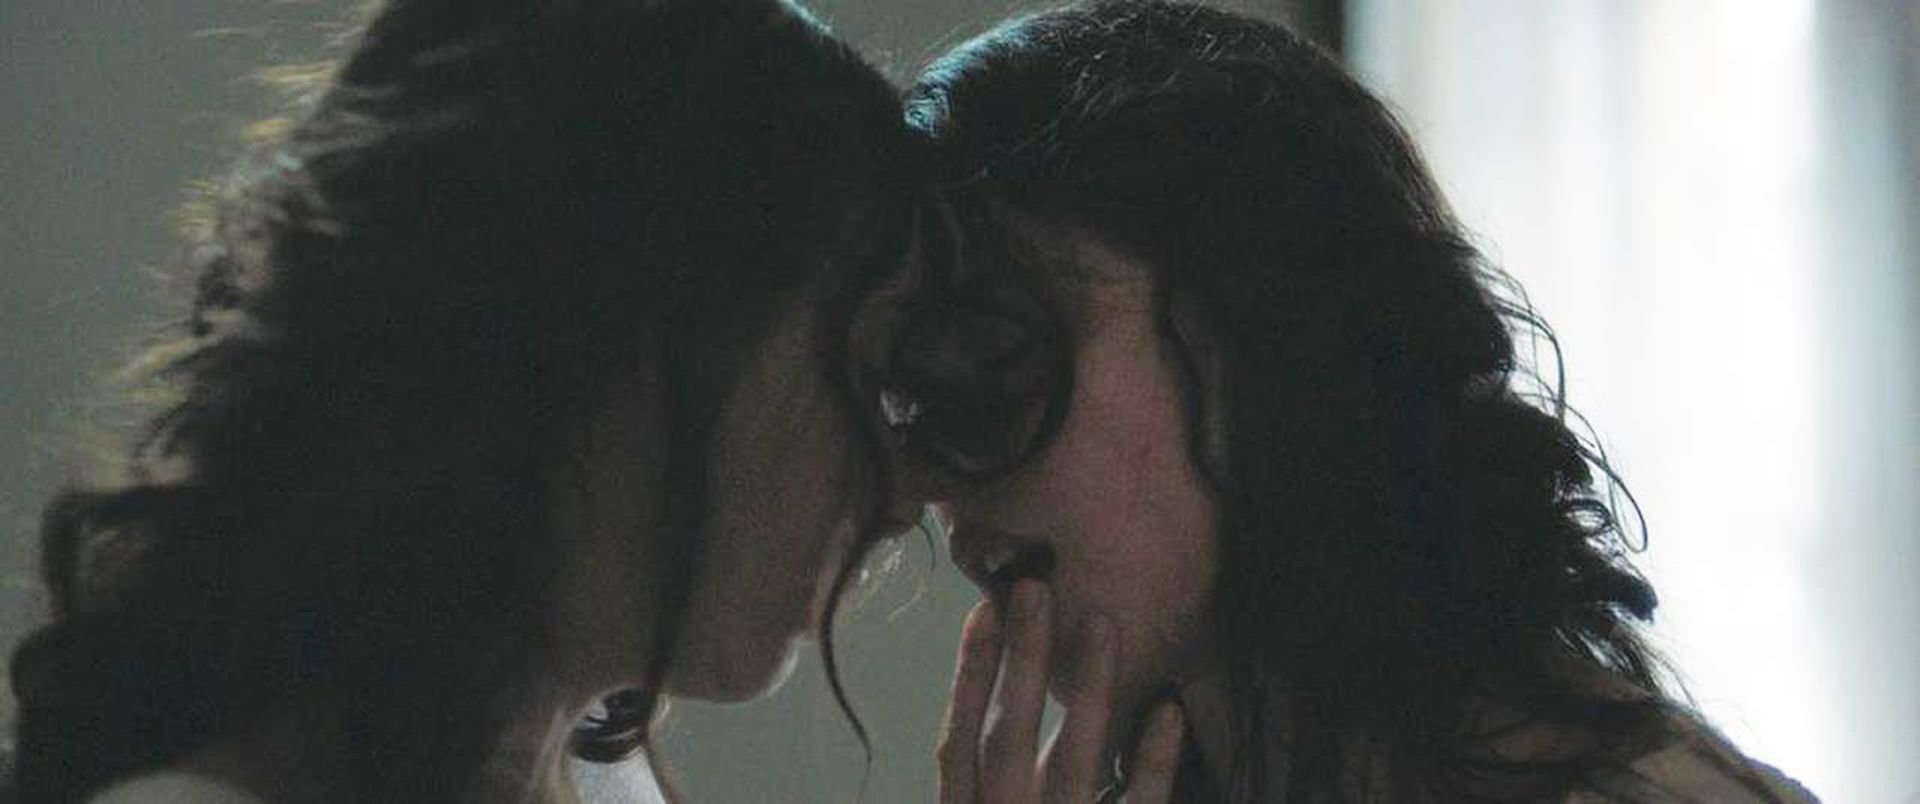 Fifteen Screenshots Focusing on Margaret Qualley’s Lesbian Kiss